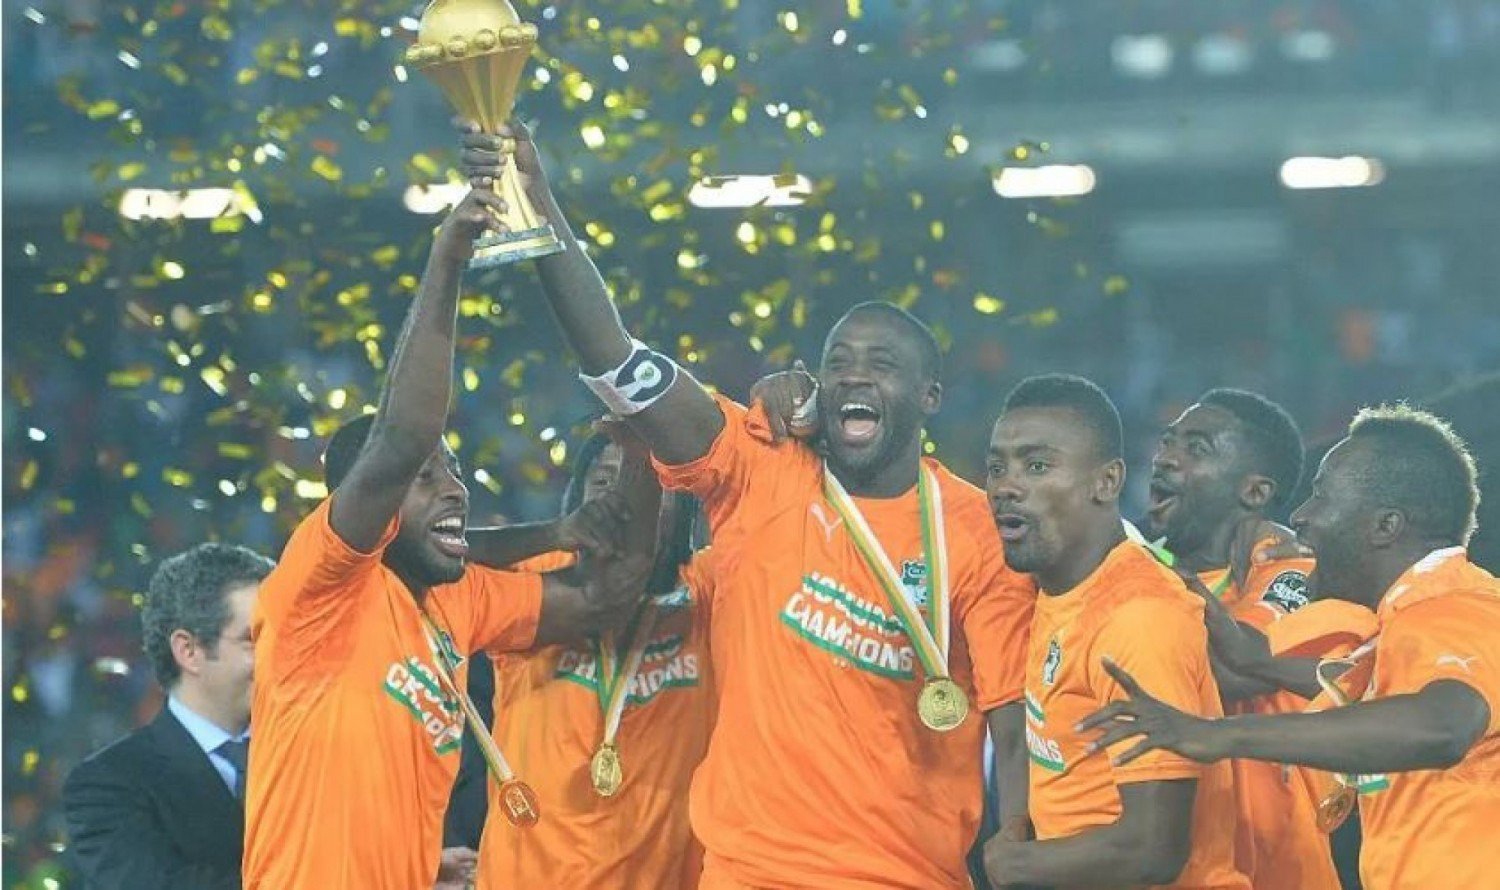 Tout comme son frère Salomon Kalou, Yaya Touré a également joué pour l'équipe nationale de Côte d'Ivoire